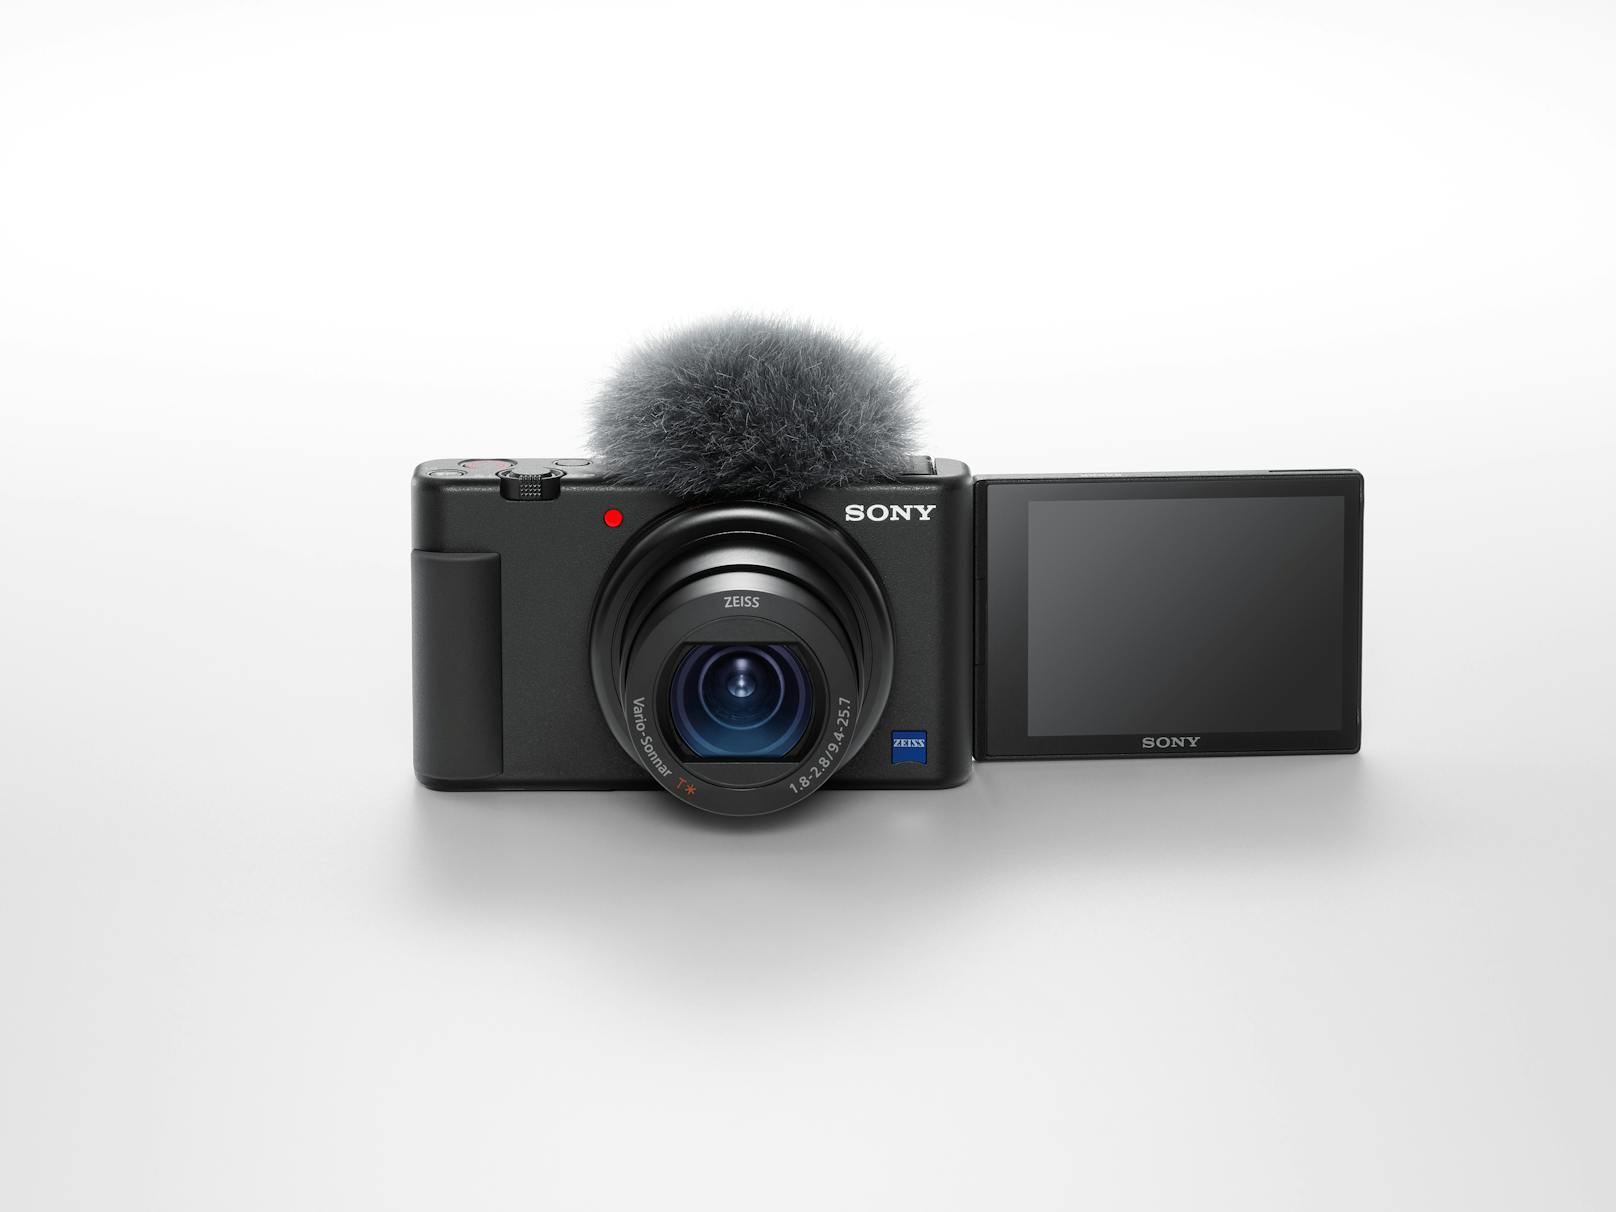 Sony erweitert sein Sortiment für Vlogger um die neue Vlog-Kamera ZV-1.